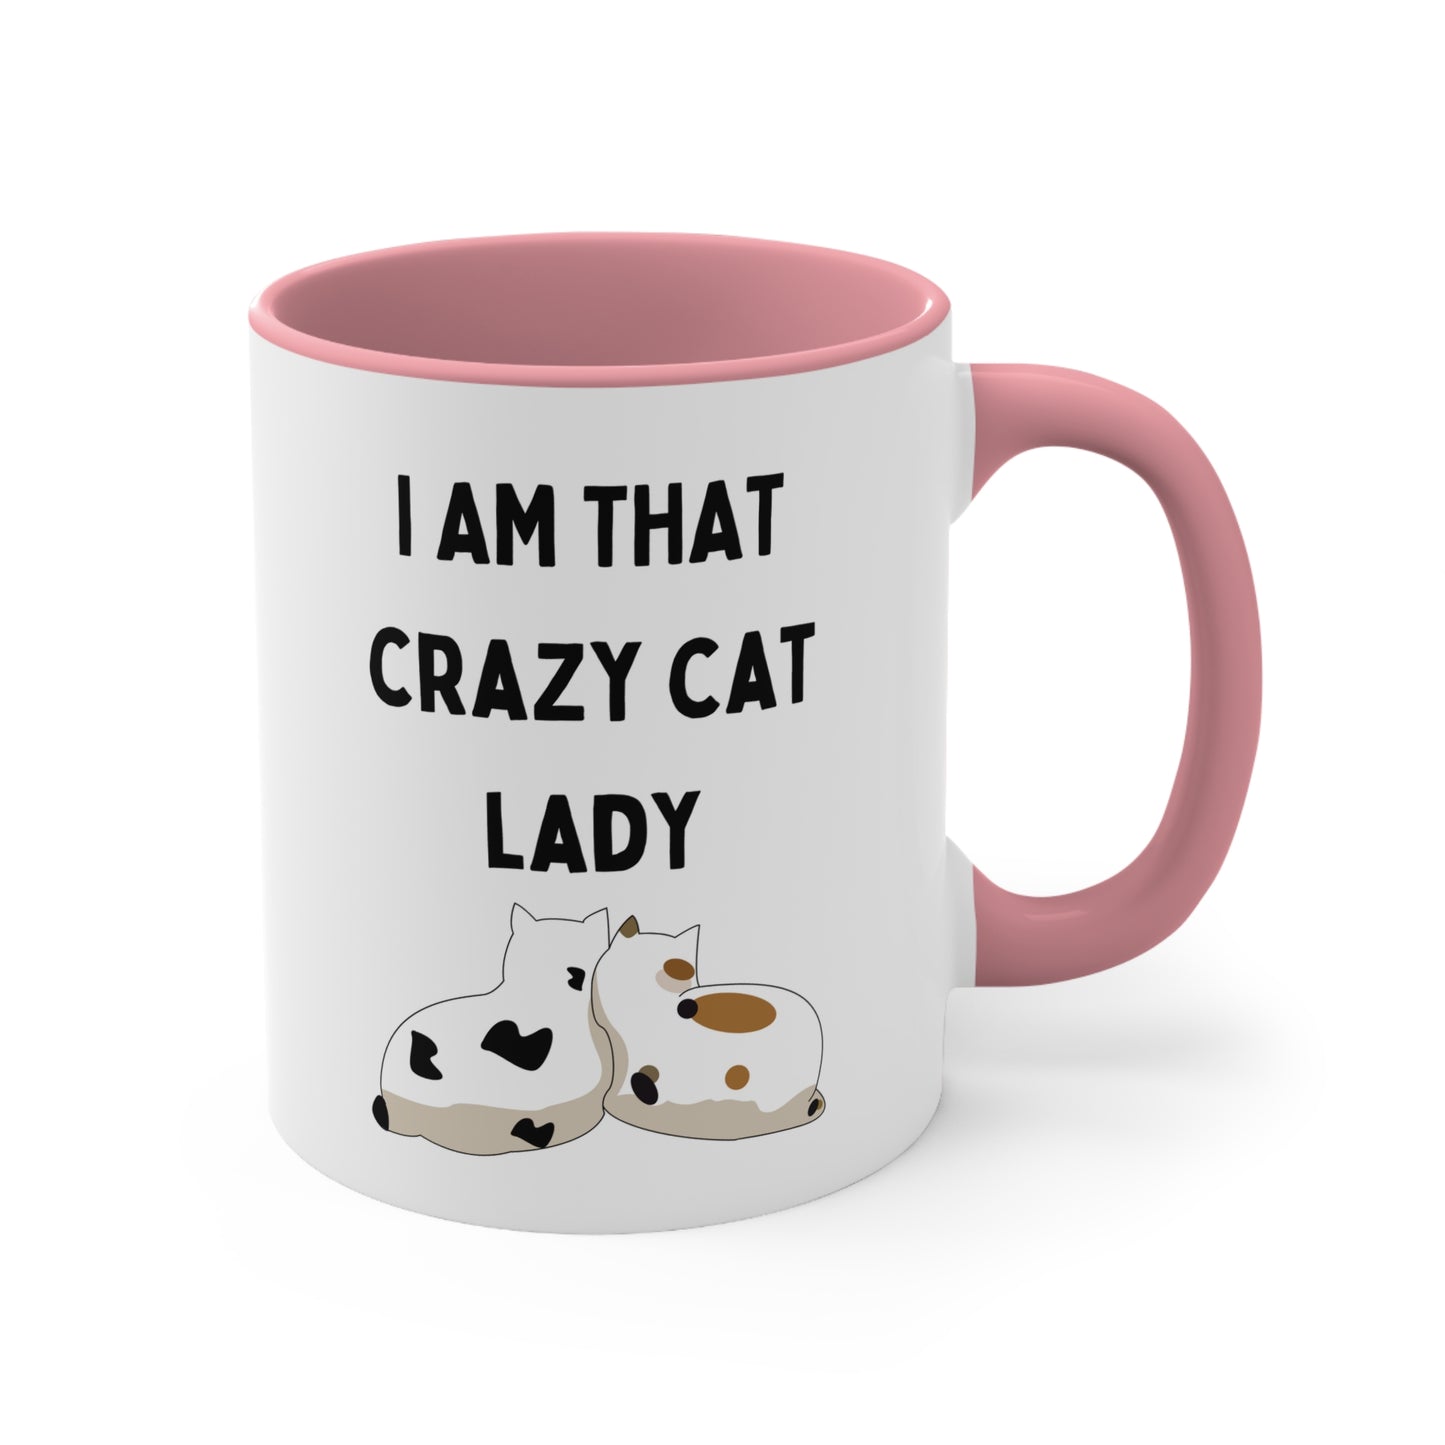 Are you a Crazy Cat Lady? Mug, 11oz